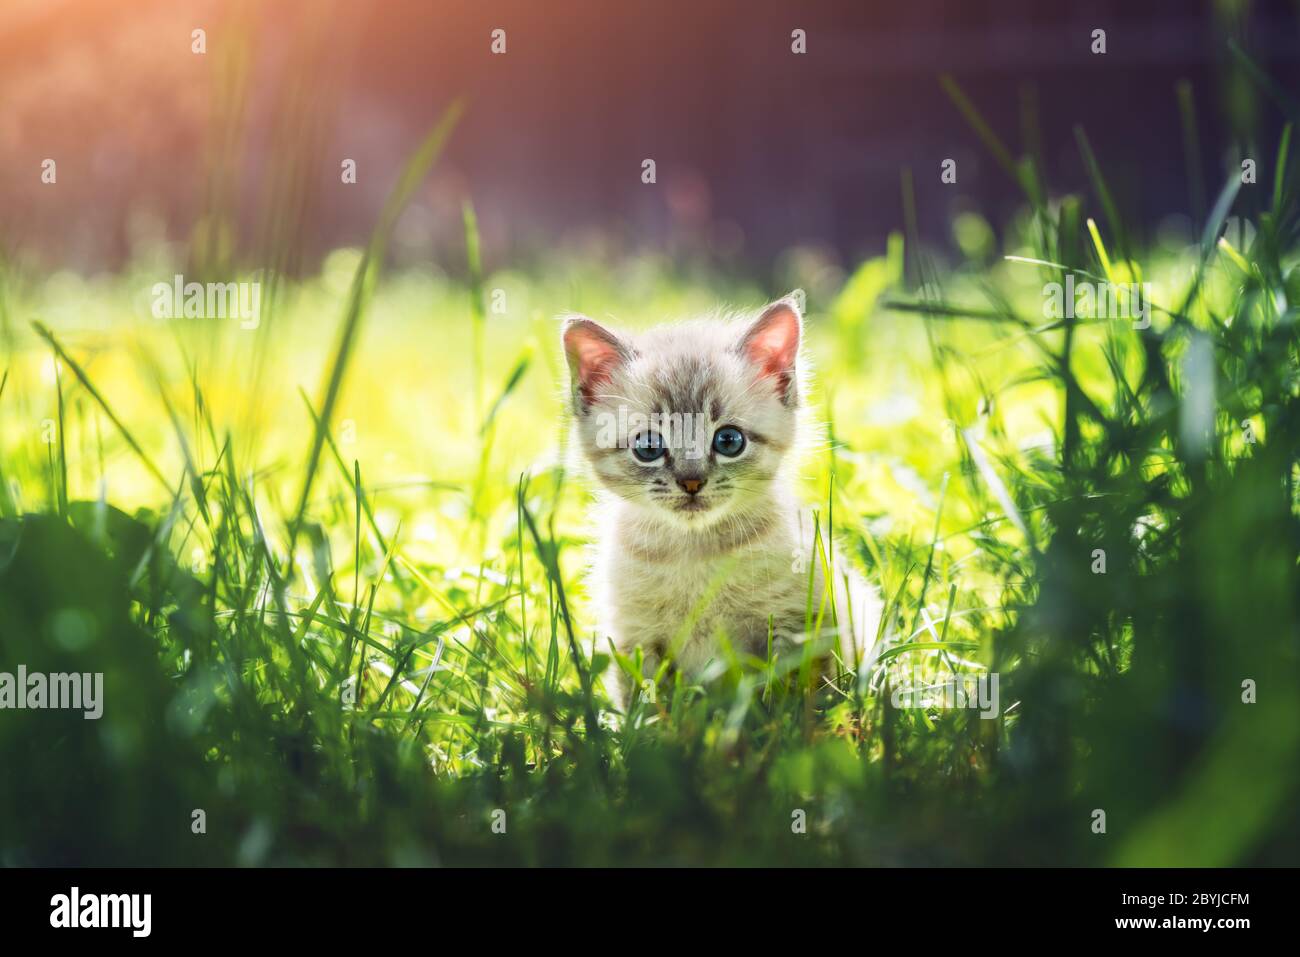 Gatto gattino piccolo con ayes blu in erba verde su giardino primo piano. Fotografia di animali domestici Foto Stock